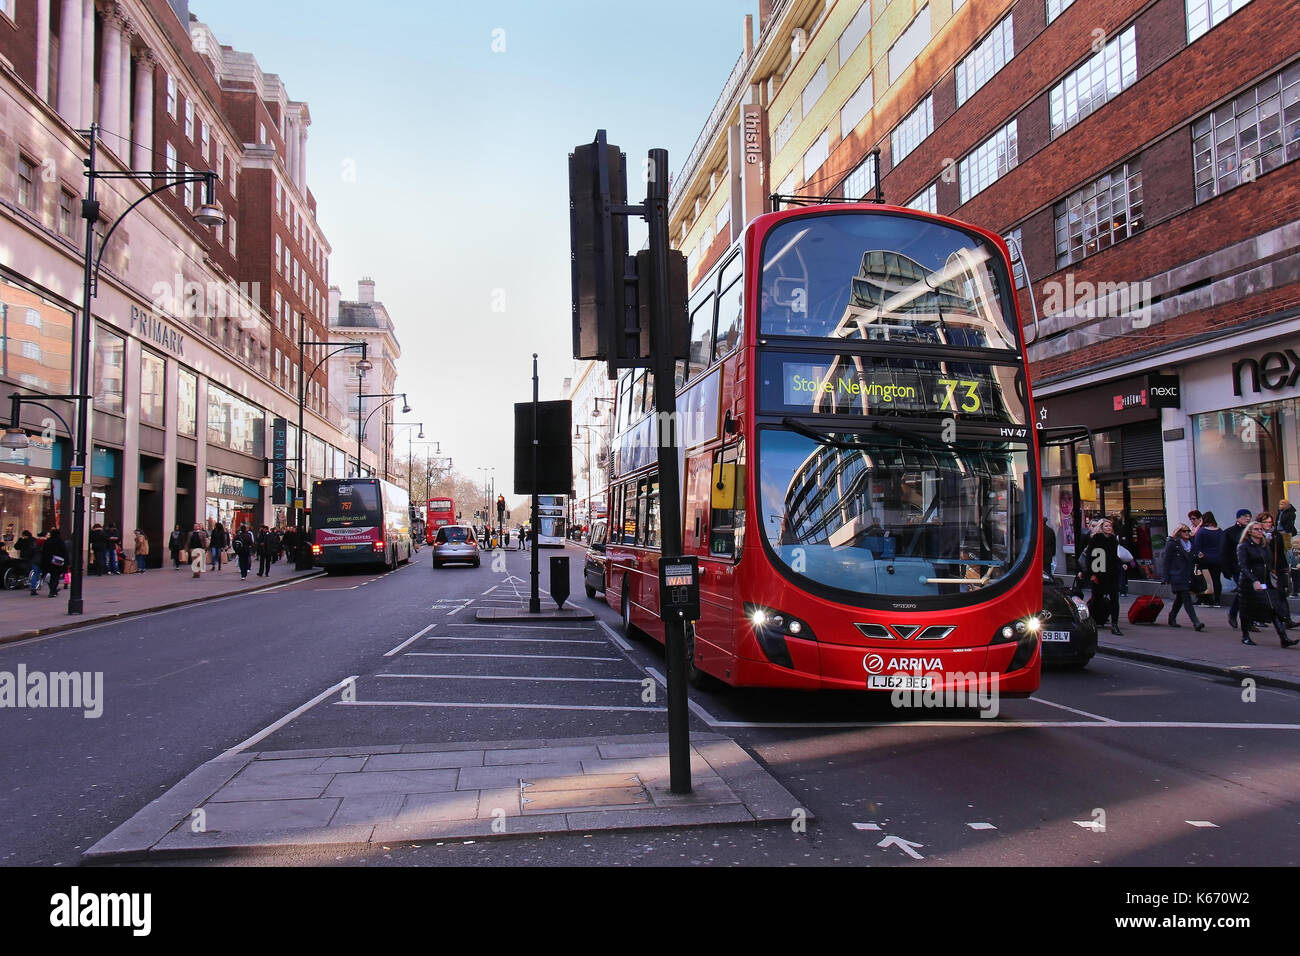 Londres, Reino Unido - 08 de febrero: el transporte público de Londres autobús rojo tráfico en Oxford Street en Londres, Reino Unido - 08 de febrero de 2015; Oxford Street en lon Foto de stock